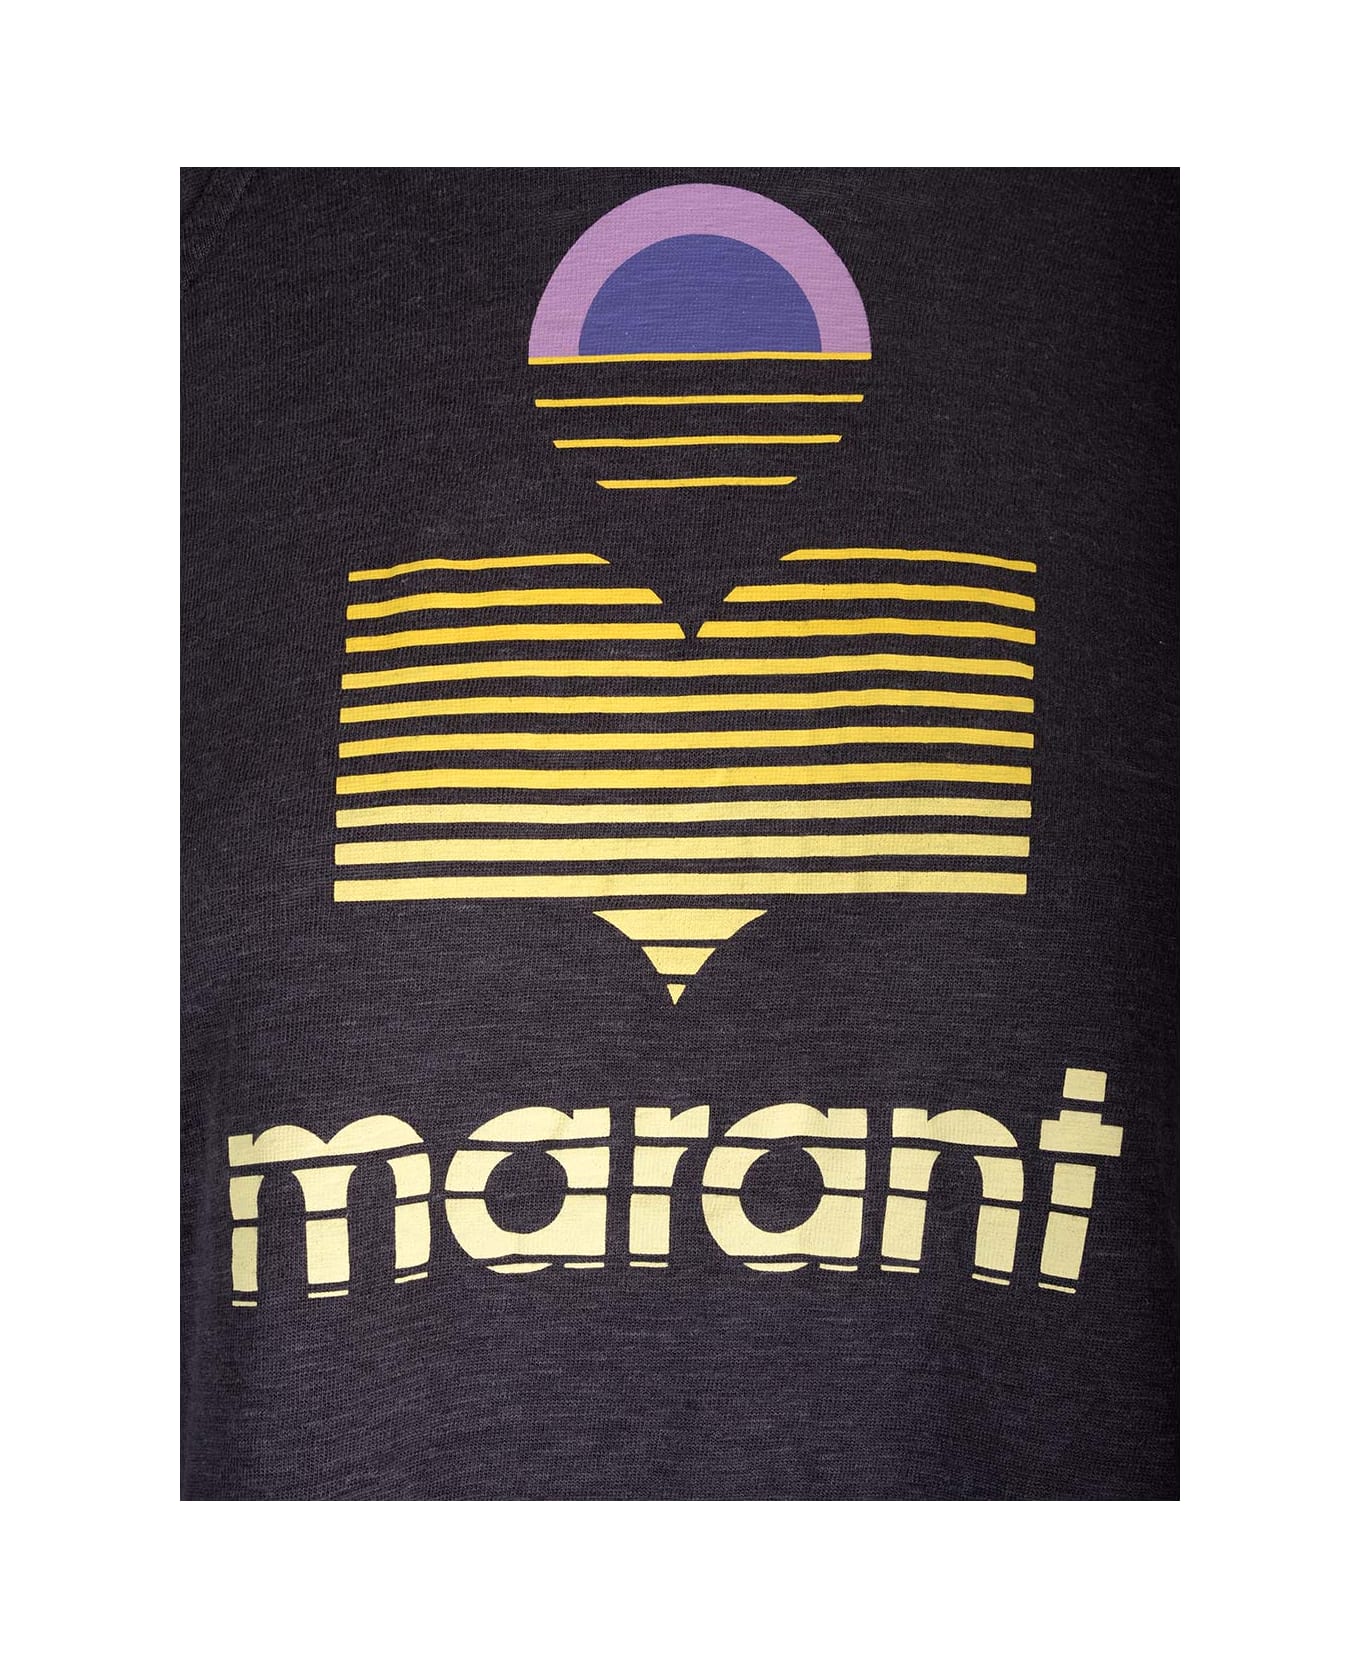 Marant Étoile Kiefferf T-shirt With Print - Black フリース